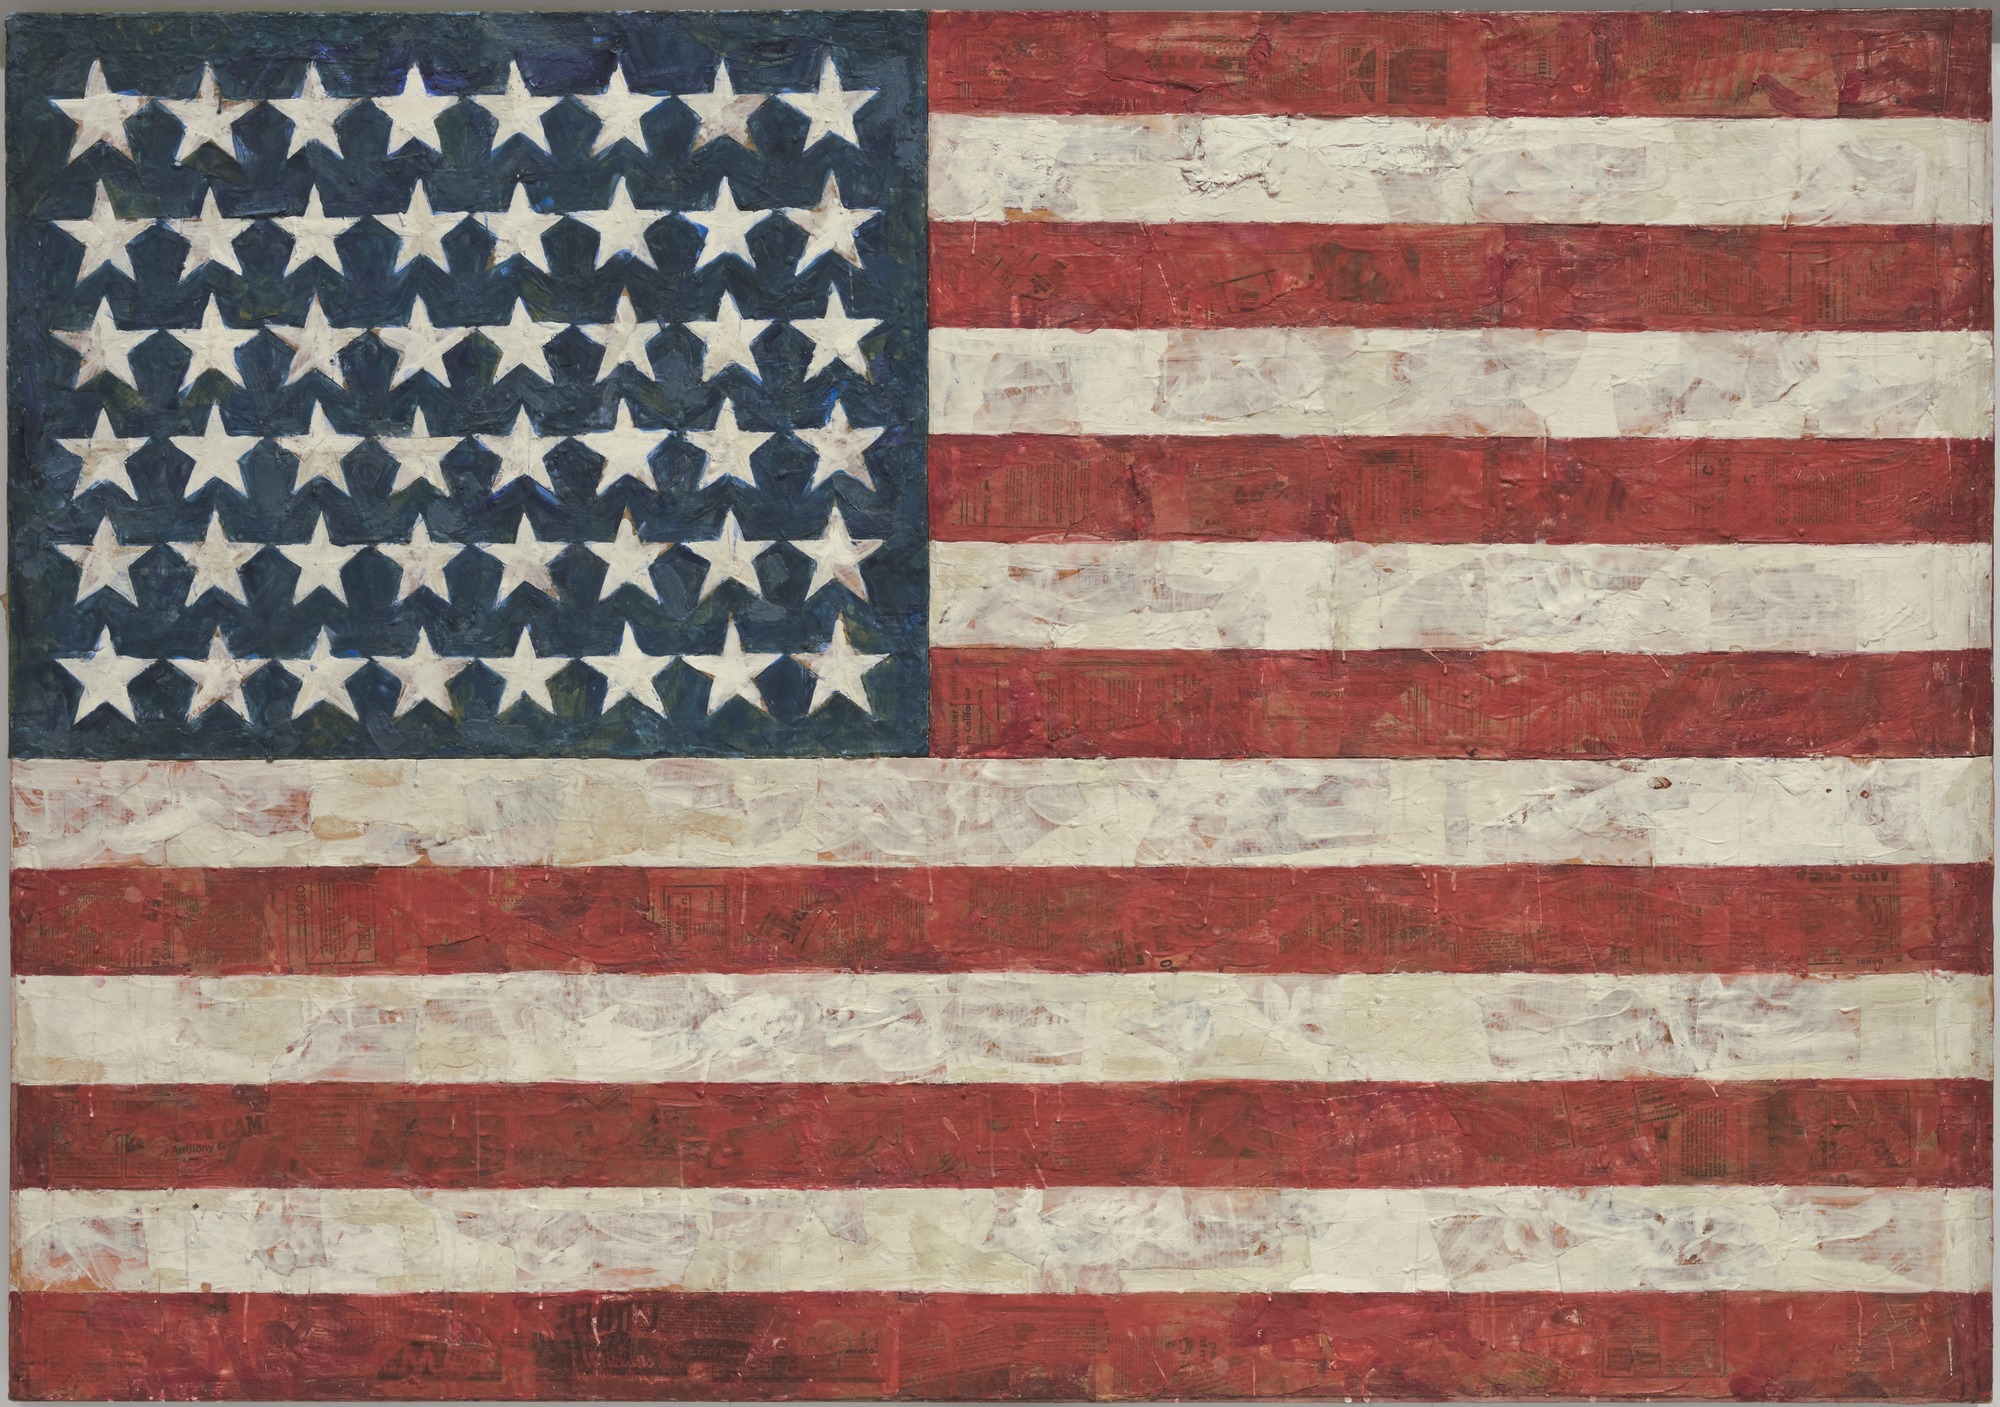 Jasper Johns - Flag - 1954-55